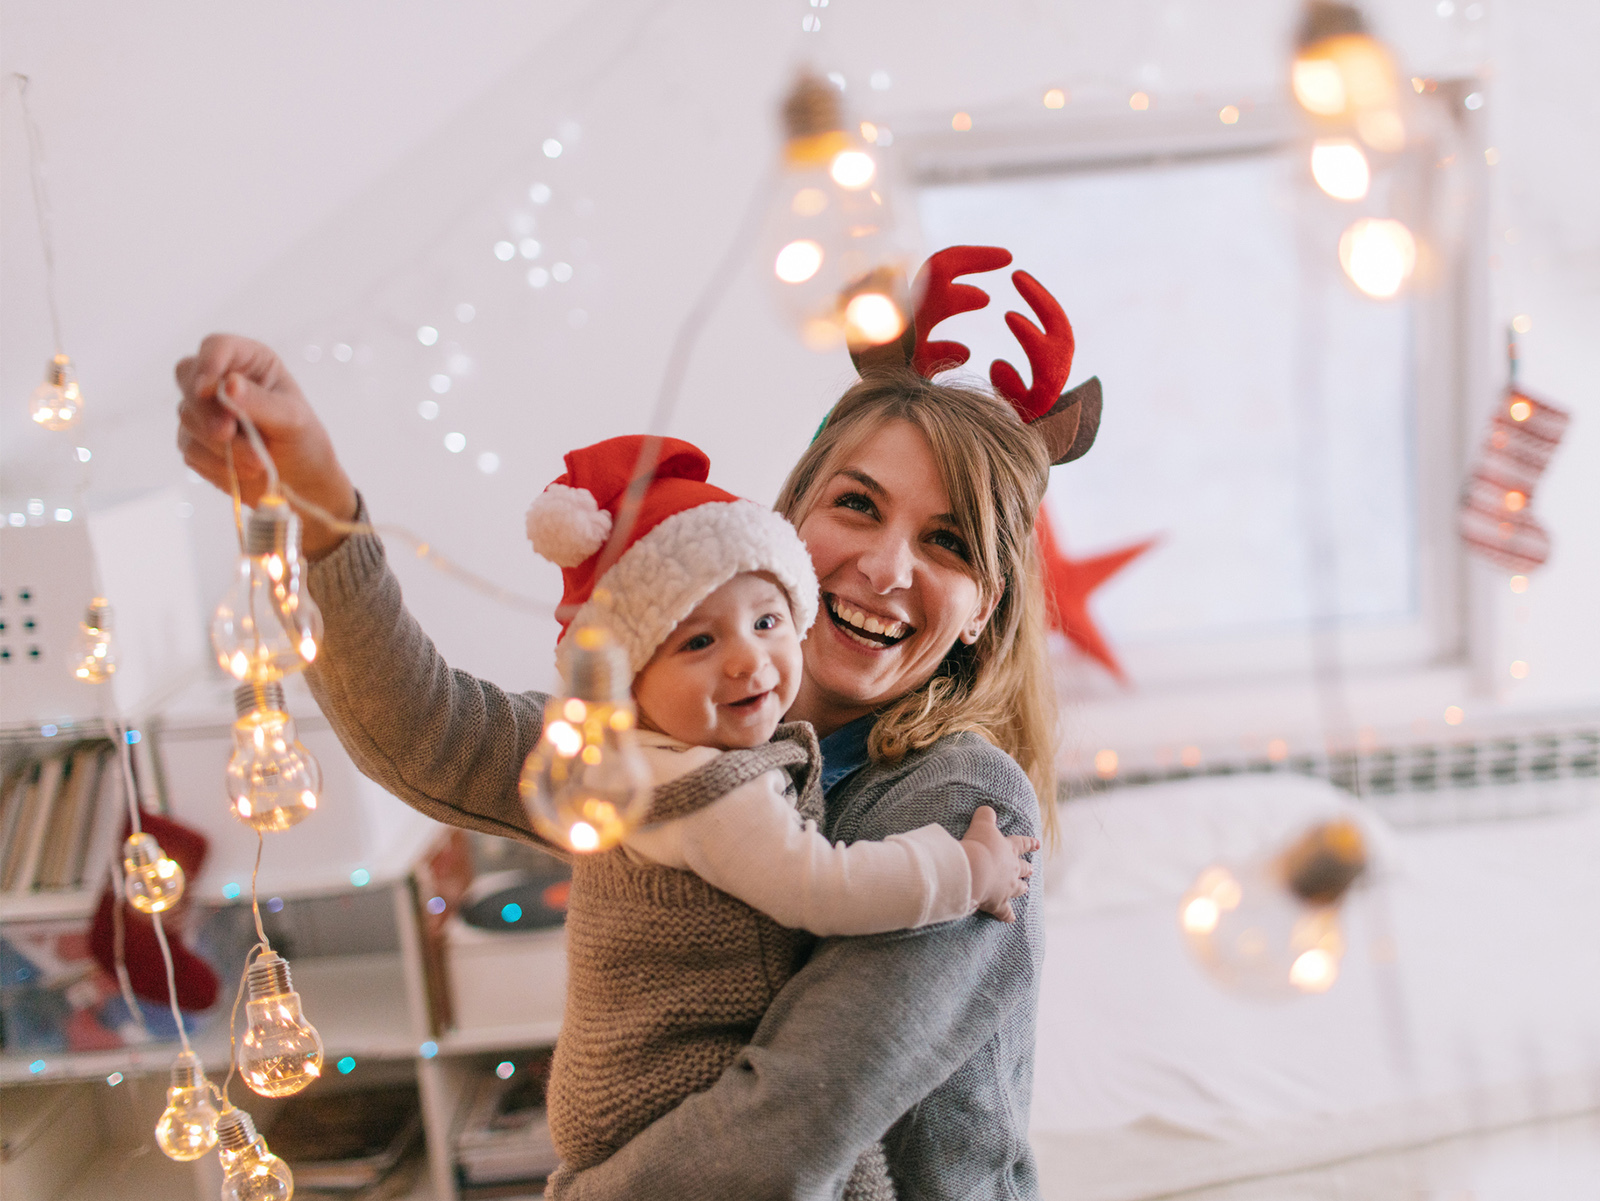 Jak sprawić, by dzieci na zawsze zapamiętały rodzinne Święta?